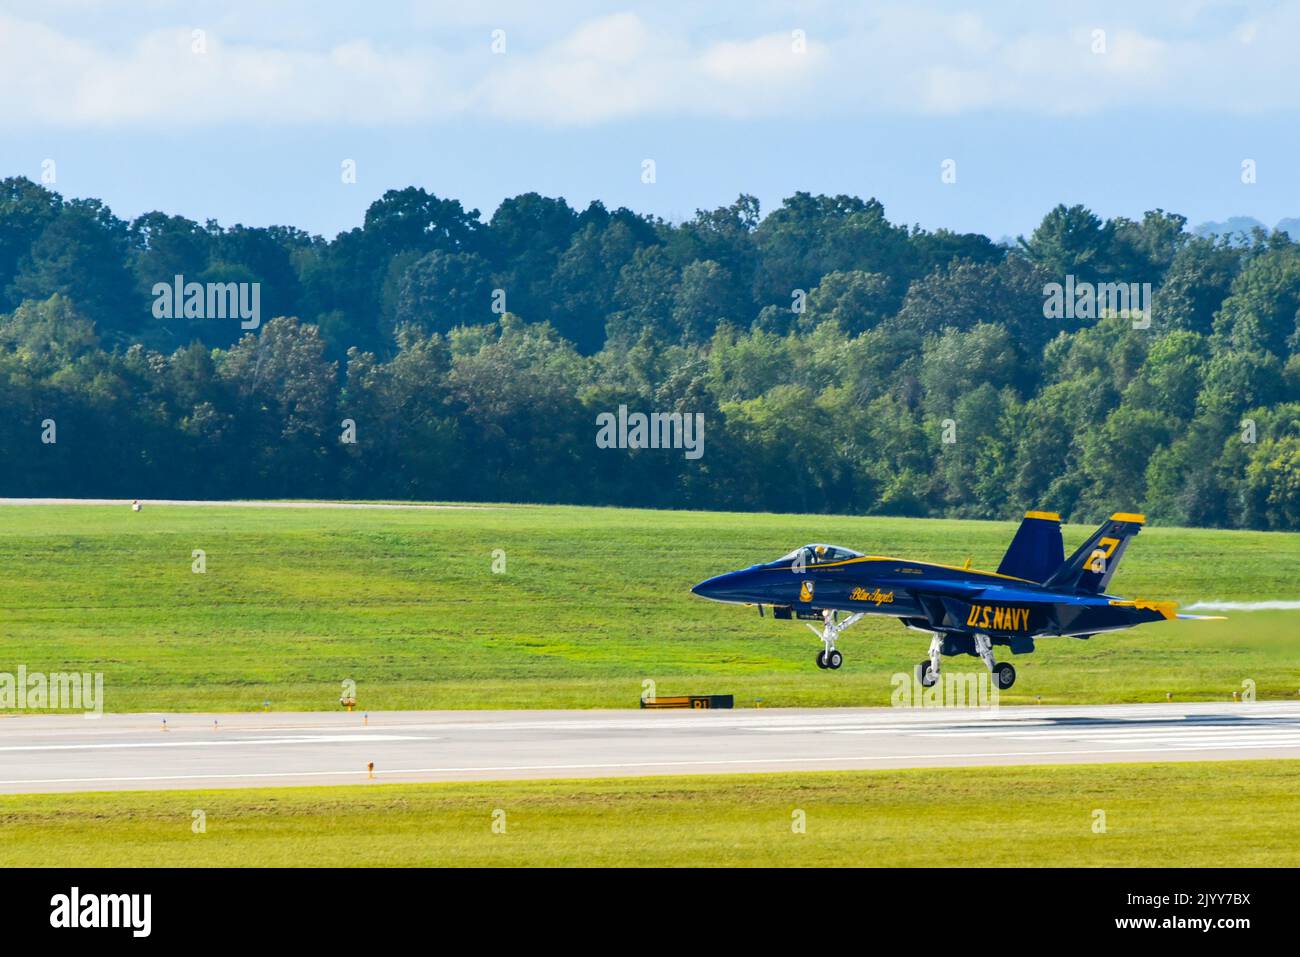 Gli U.S. Navy Blue Angels sono arrivati qui e hanno iniziato i loro voli di orientamento per prepararsi allo Smoky Mountain Air Show. L'Air Show si svolge dal 10th al 11th settembre. (STATI UNITI Air National Guard foto di staff Sgt. Brandon Keys.) Foto Stock